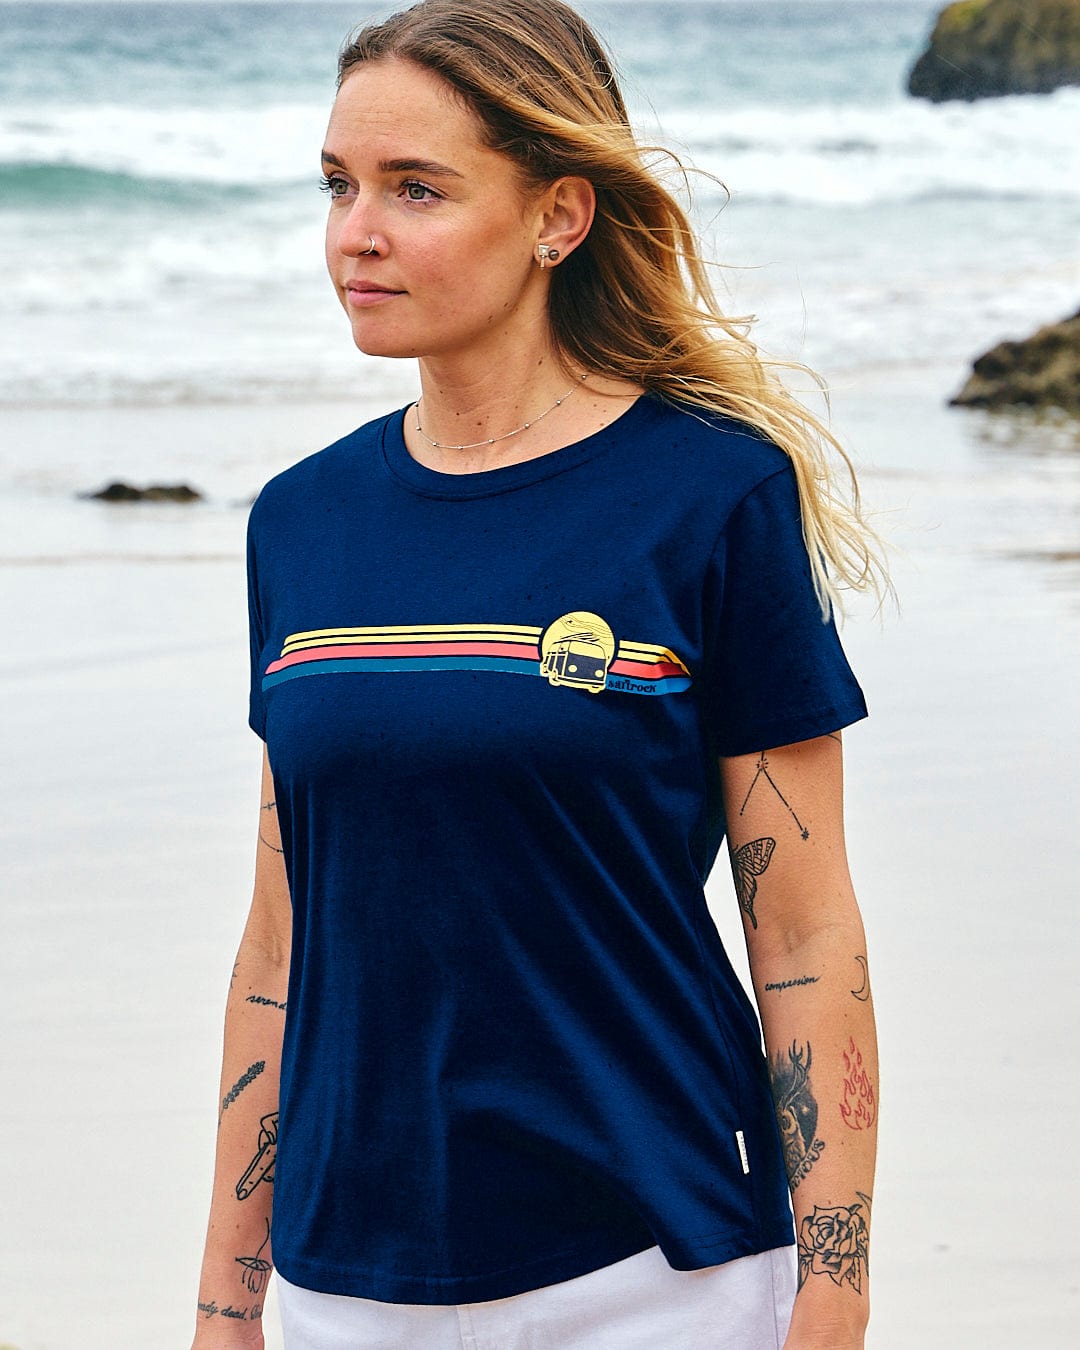 A woman standing on the beach wearing a Saltrock Celeste Stripe - Womens Short Sleeve T-Shirt - Blue.